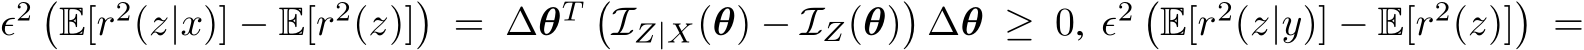 ϵ2 �E[r2(z|x)] − E[r2(z)]� = ∆θT �IZ|X(θ) − IZ(θ)�∆θ ≥ 0, ϵ2 �E[r2(z|y)] − E[r2(z)]� =